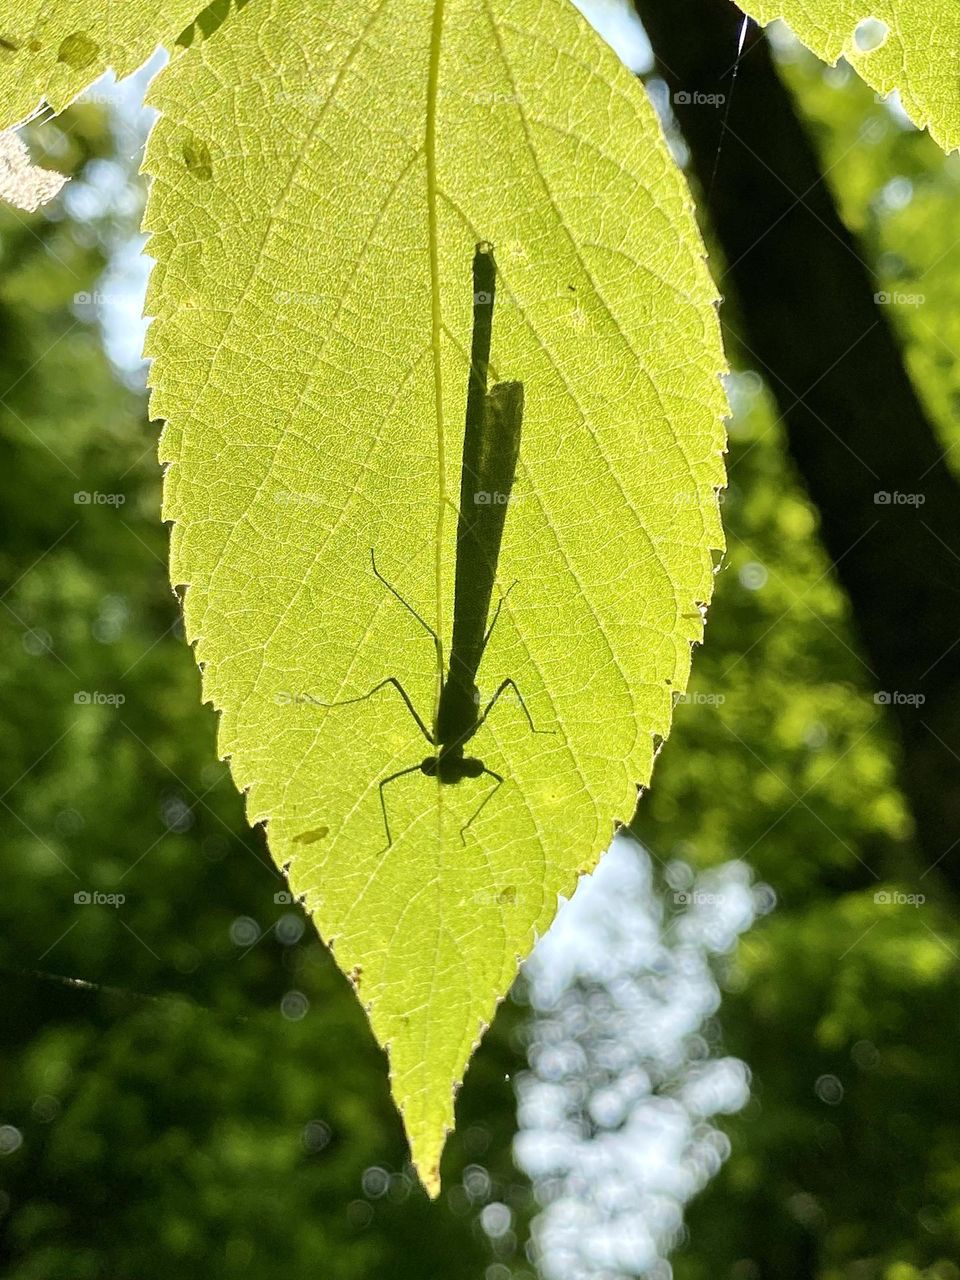 The shadow of a damselfly sitting on a leaf